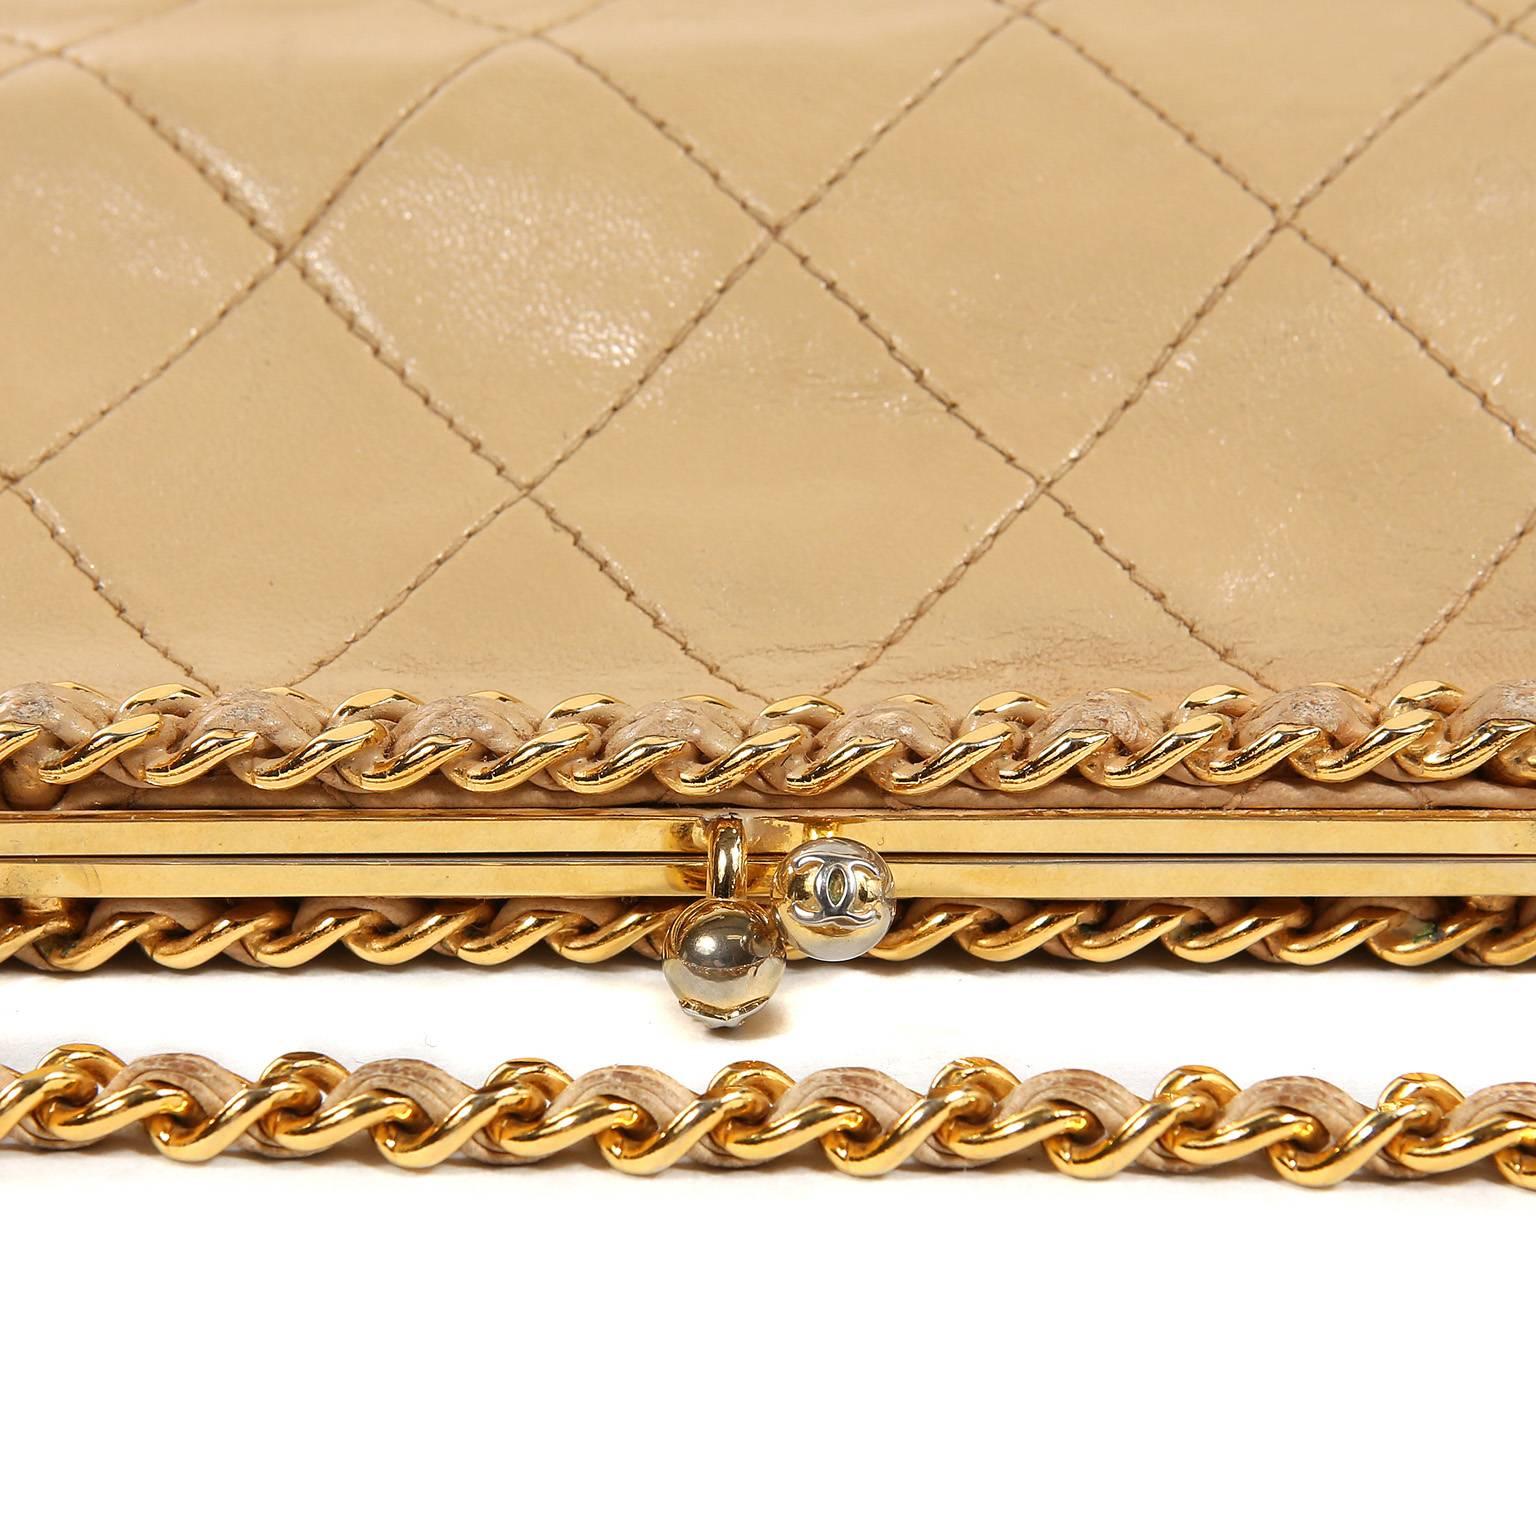 Women's Chanel Beige Leather Kiss Lock Bag